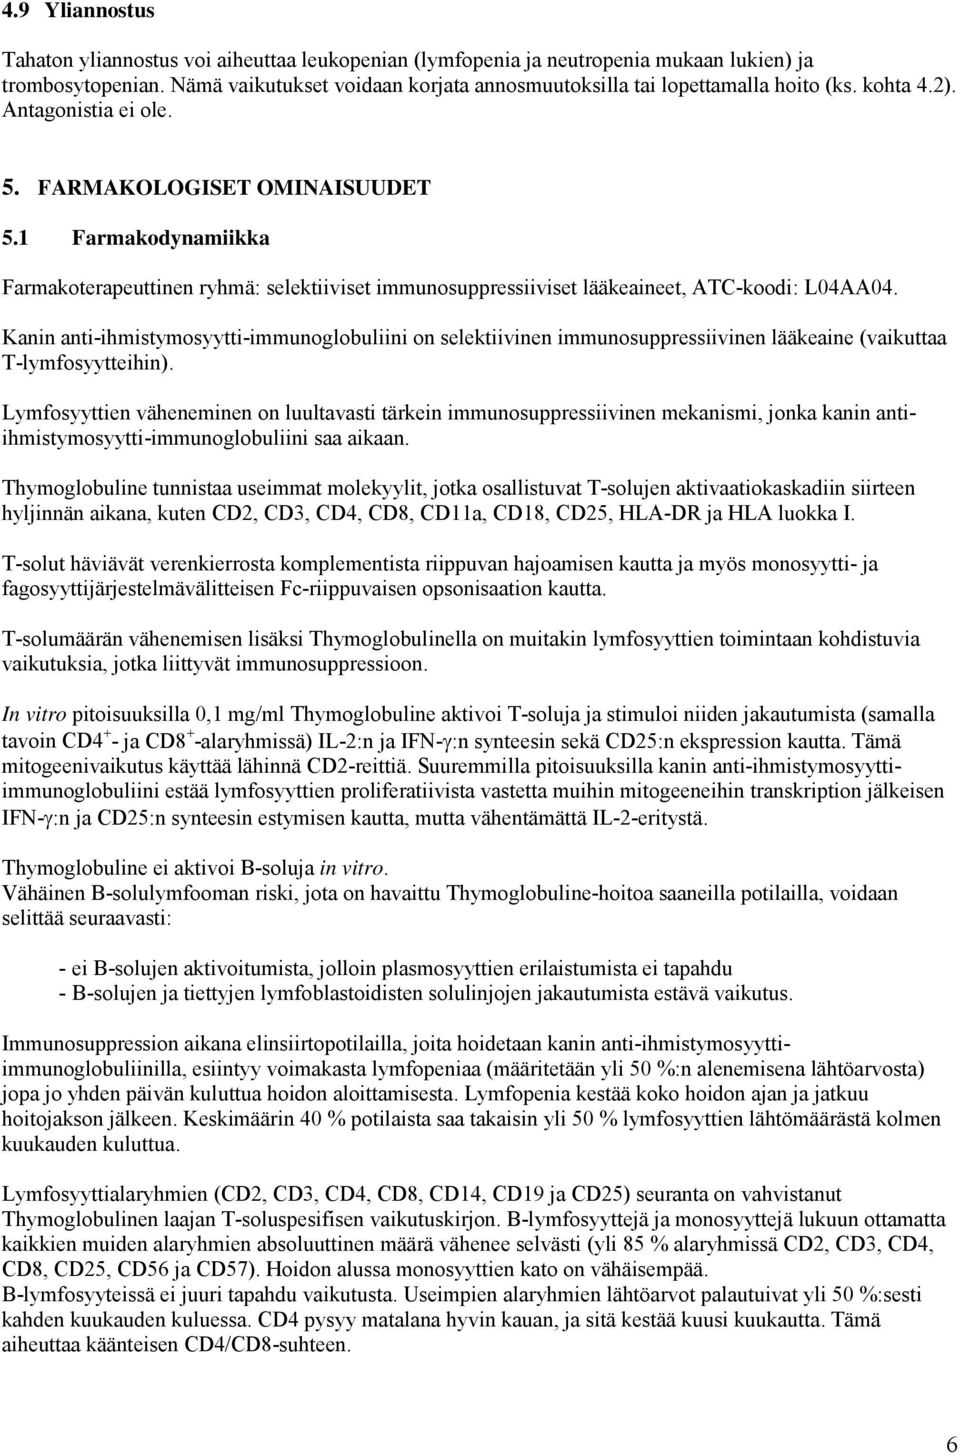 1 Farmakodynamiikka Farmakoterapeuttinen ryhmä: selektiiviset immunosuppressiiviset lääkeaineet, ATC-koodi: L04AA04.